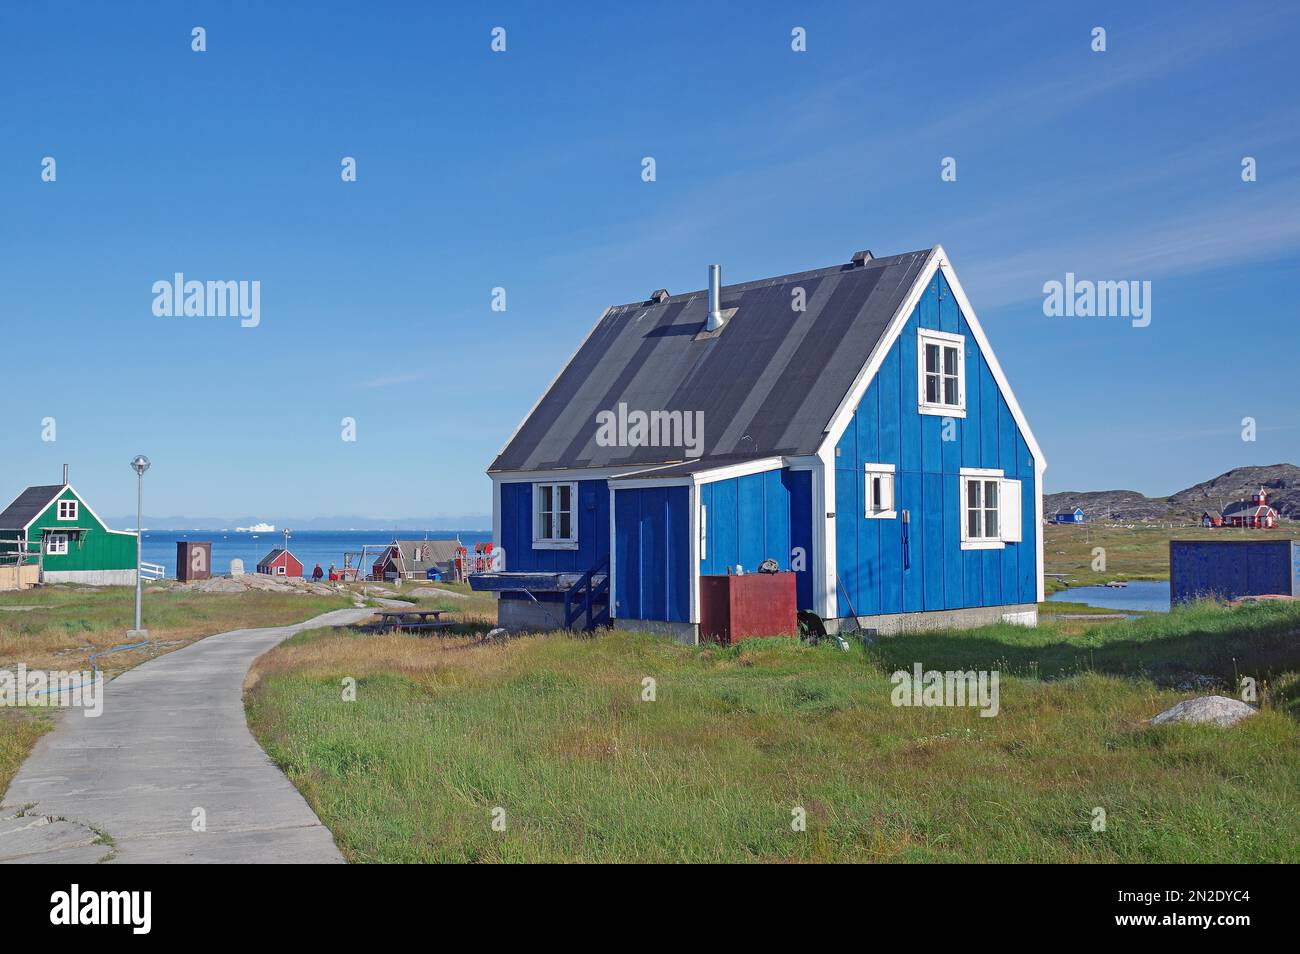 Pavés et maisons dans un paysage stérile, Ilimanaq, Disko Bay, Avanaata Kommunia, Arctique, Groenland, Danemark Banque D'Images